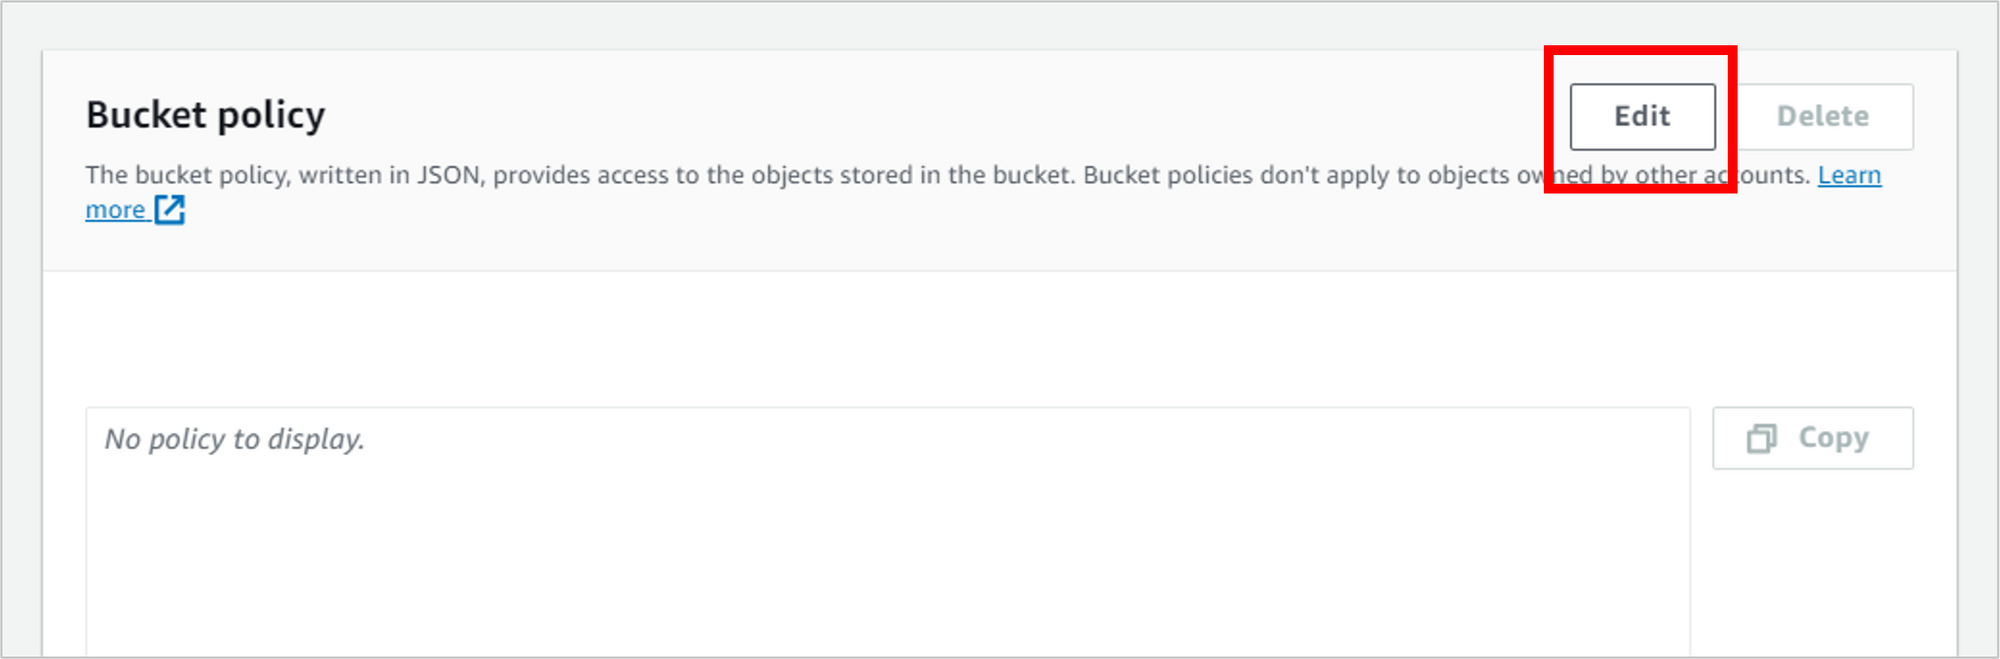 Edit-bucket-policy